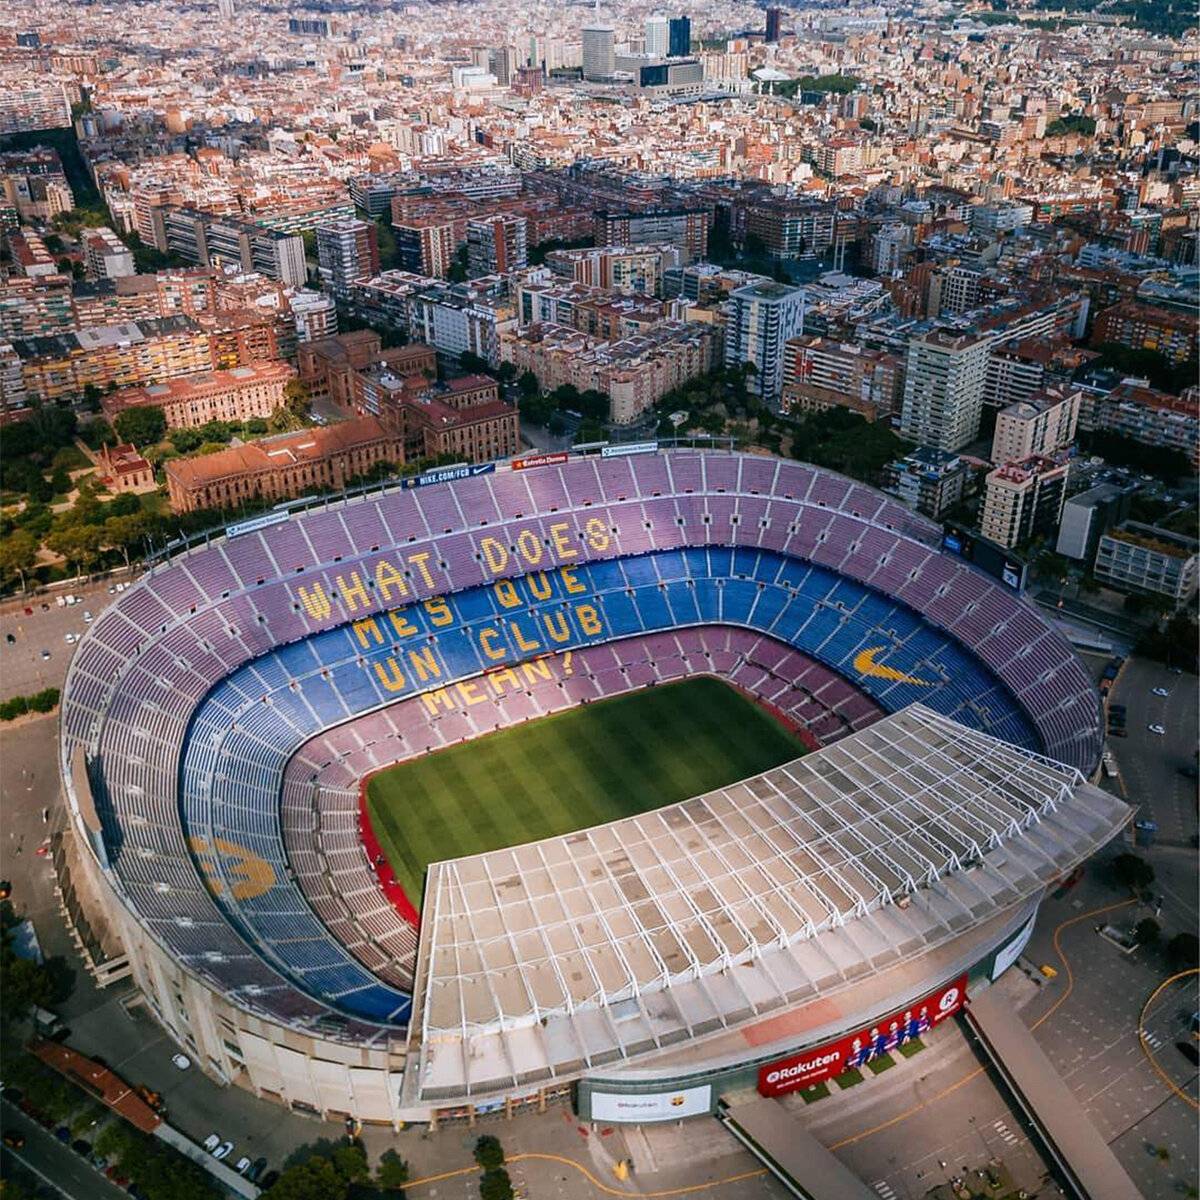 Камп ноу (барселона) - информация про стадионы мира